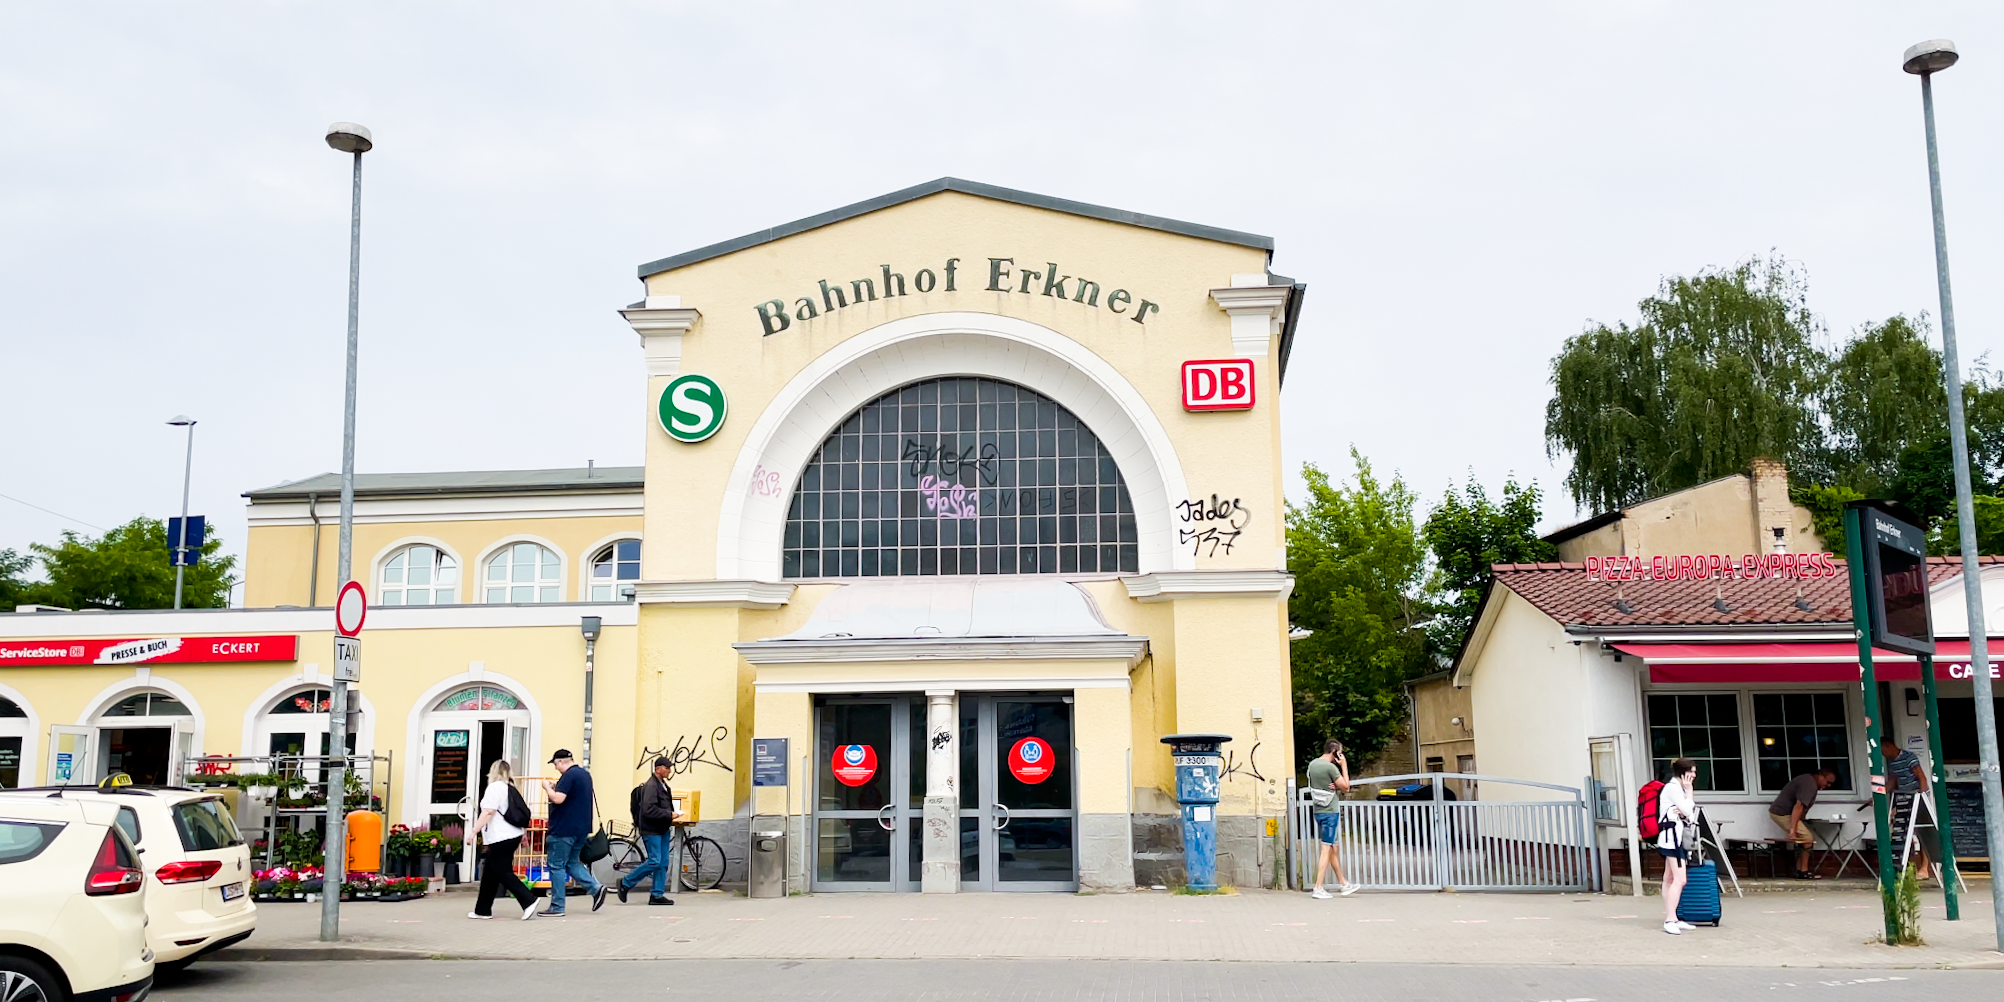 Übergabe Förderbescheid Bahnhof Erkner